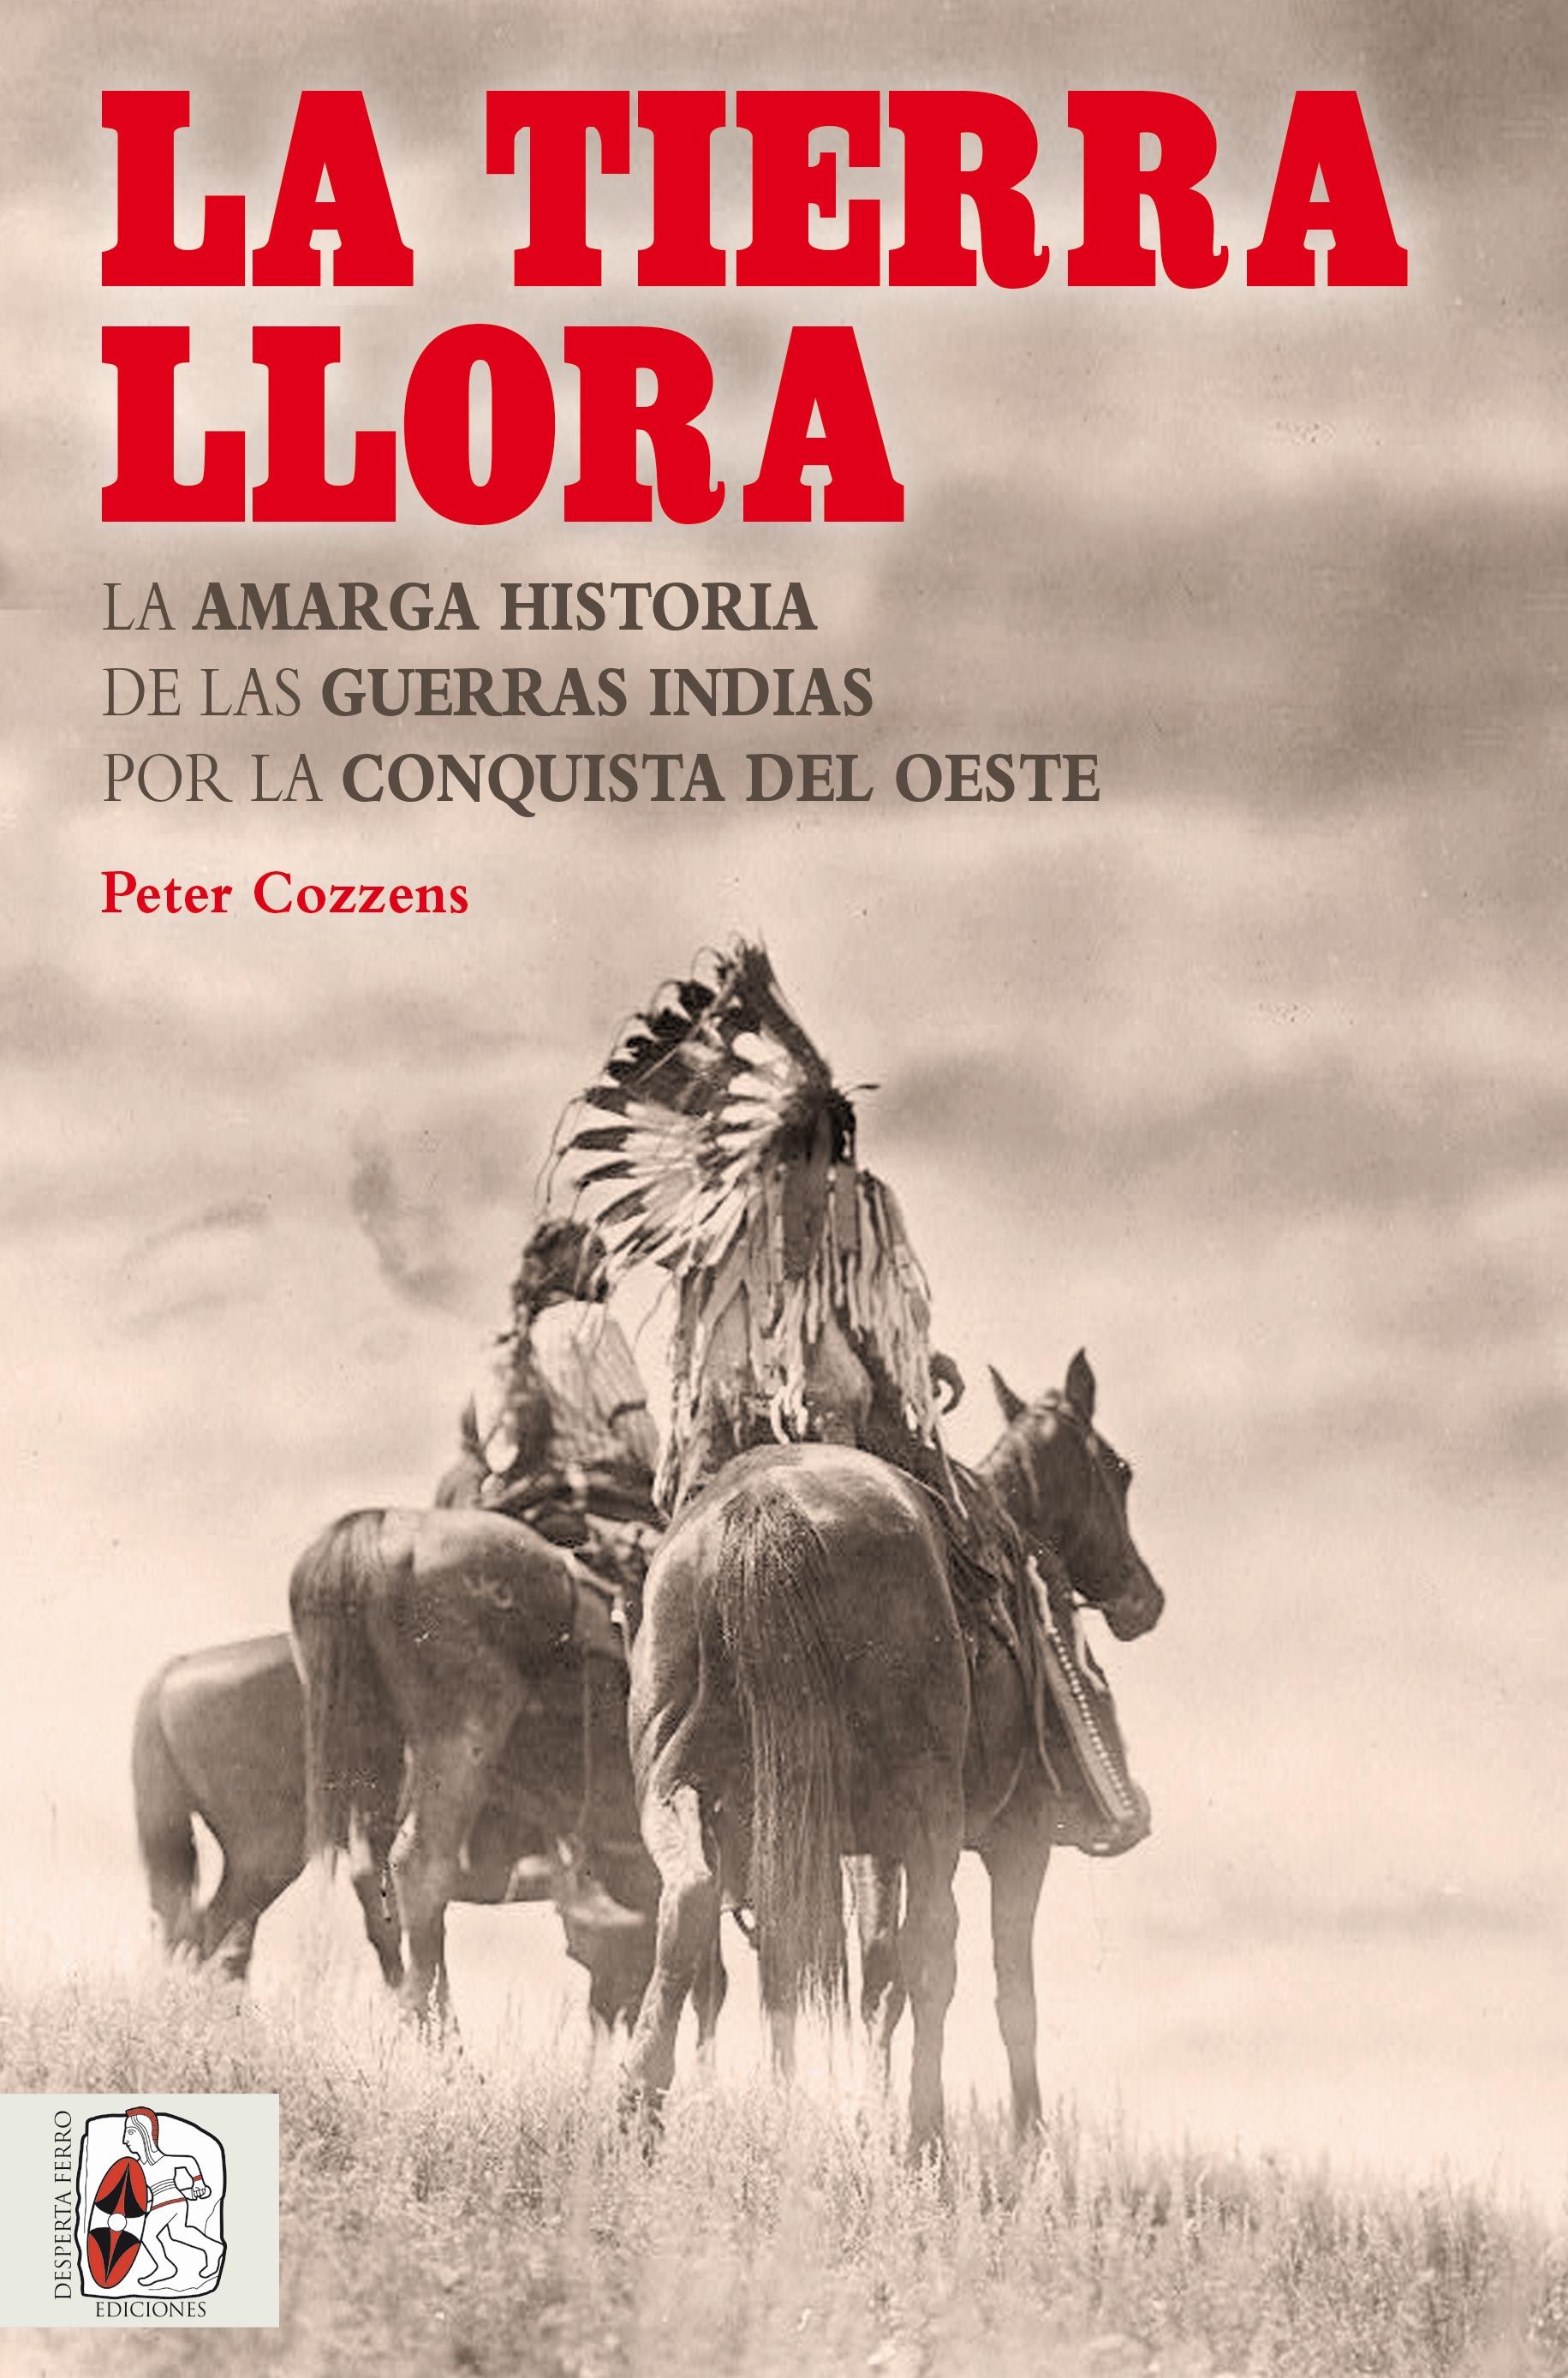 La Tierra Llora "La Amarga Historia de las Guerras Indias por la Conquista del Oeste"